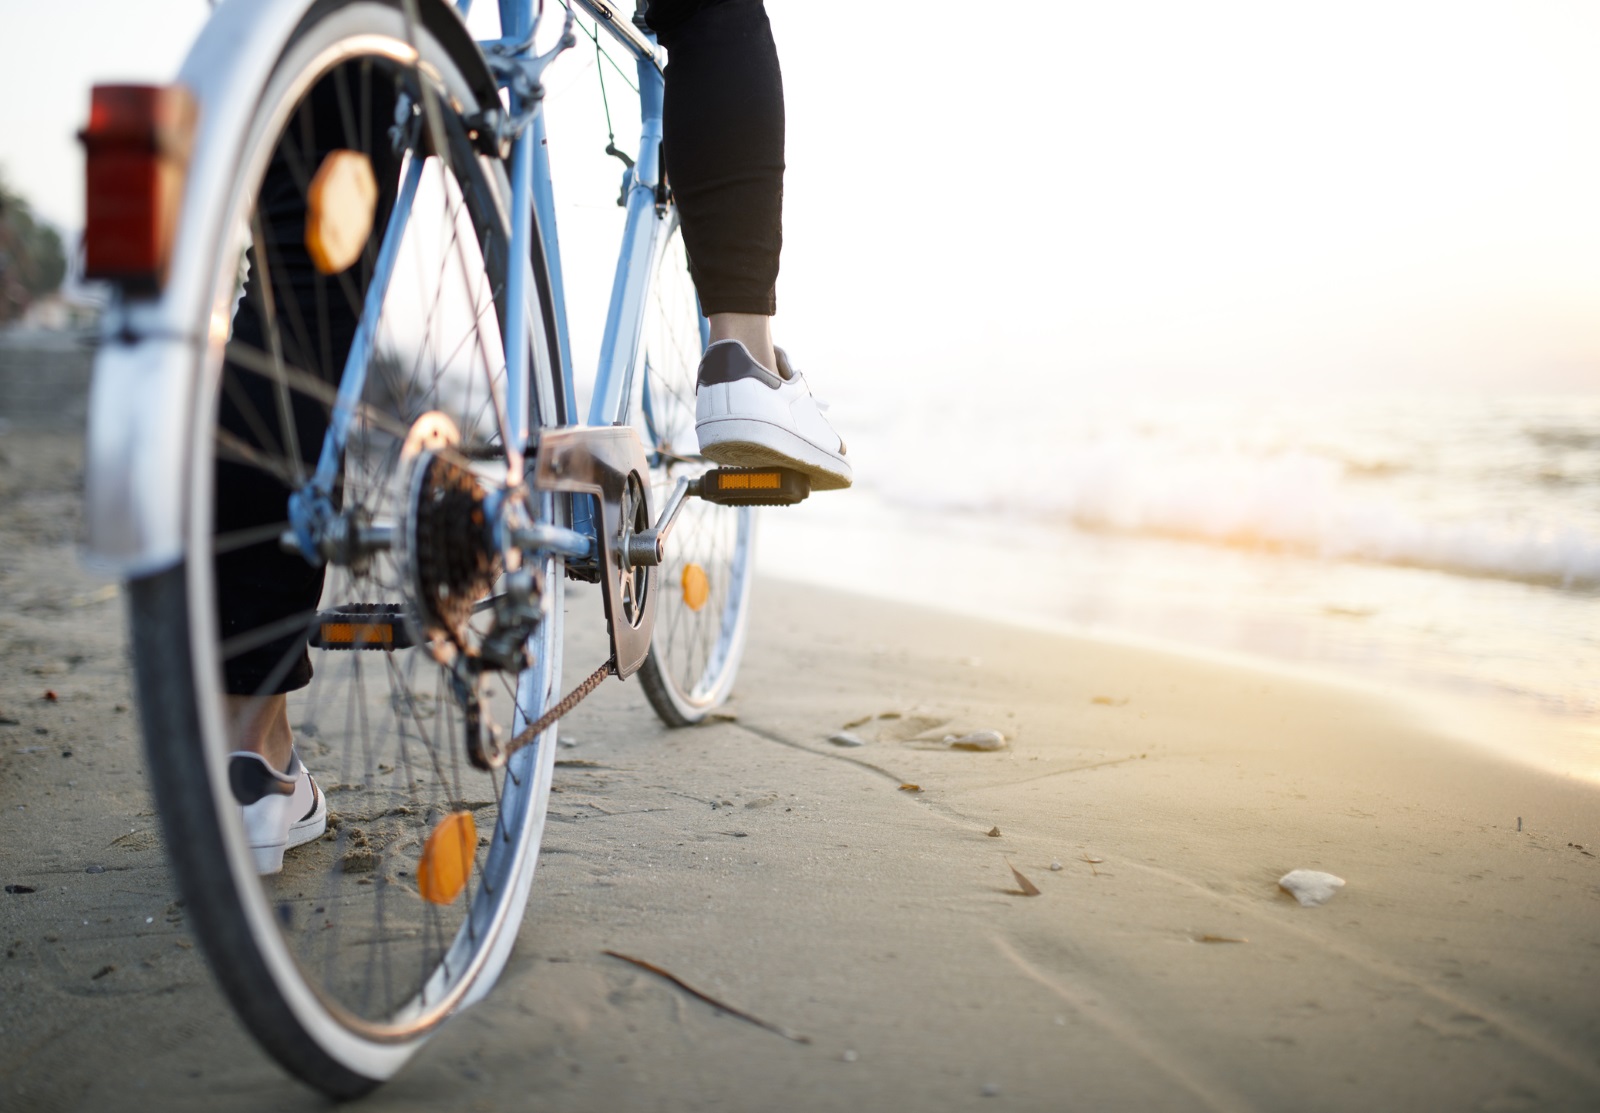  Искате ли обаче да извлечете максимална полза от карането на велосипед, трябва здраво да натисните педалите и да увеличите дистанцията/скоростта.